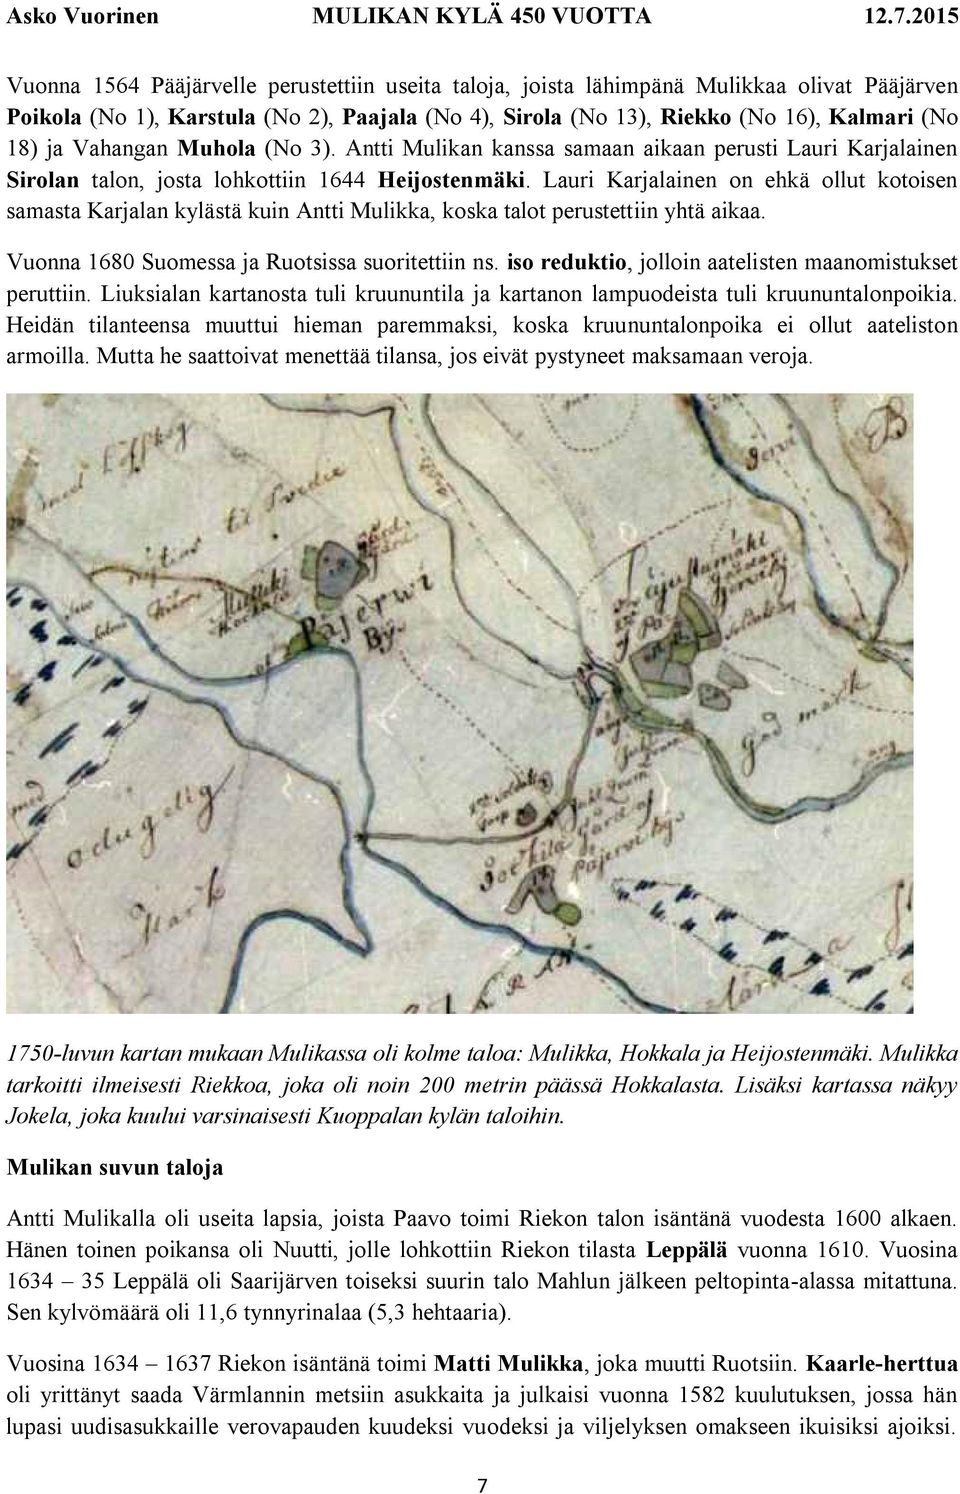 Lauri Karjalainen on ehkä ollut kotoisen samasta Karjalan kylästä kuin Antti Mulikka, koska talot perustettiin yhtä aikaa. Vuonna 1680 Suomessa ja Ruotsissa suoritettiin ns.